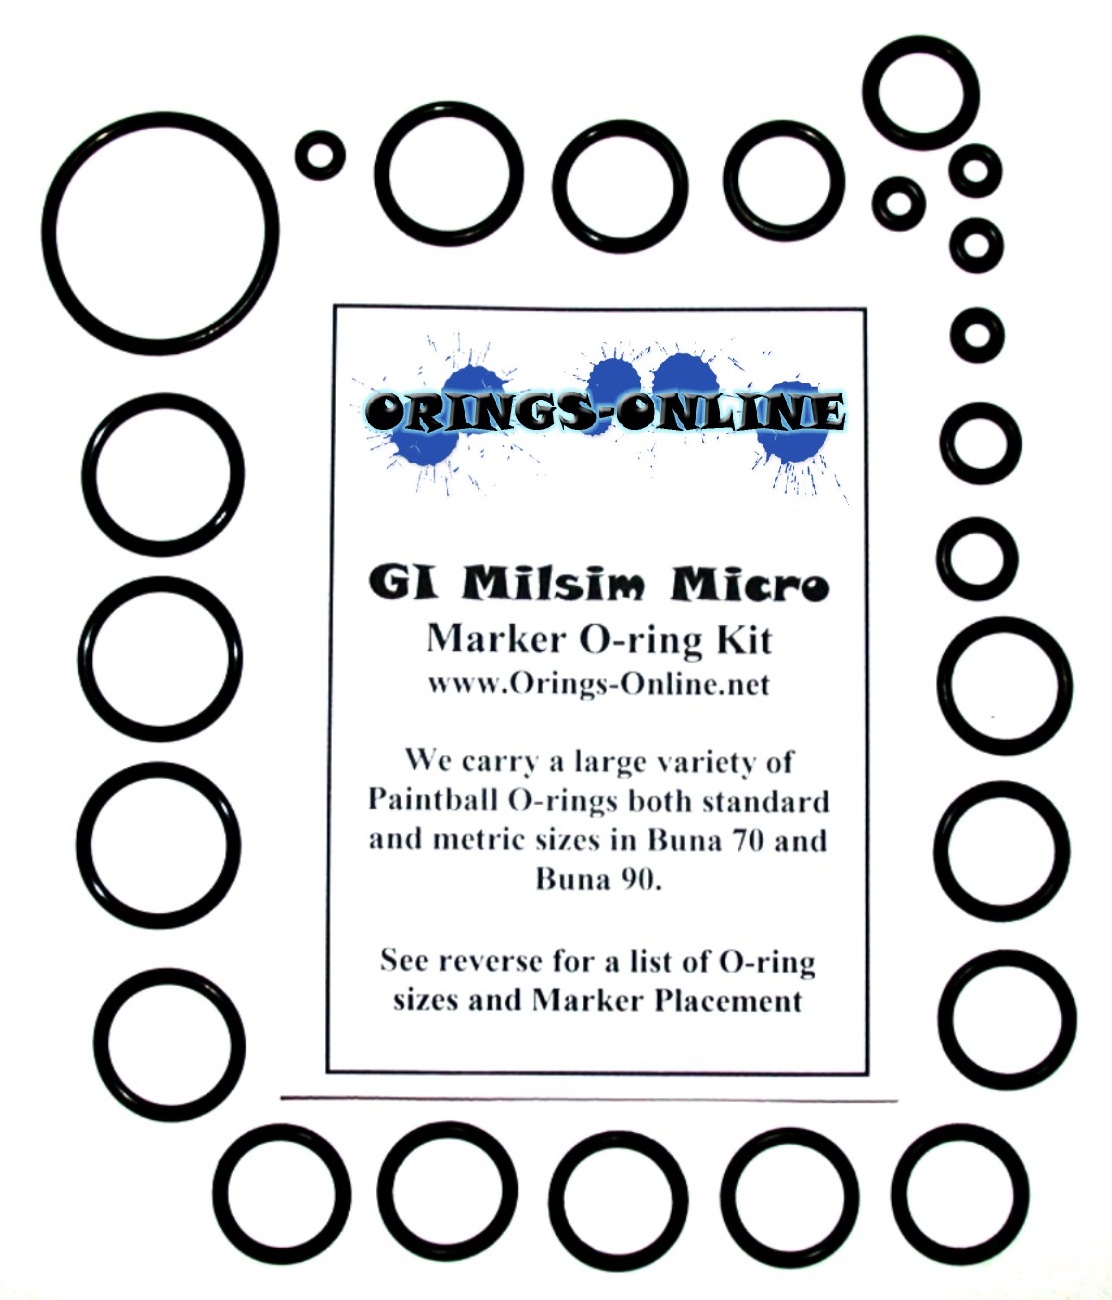 GI Milsim Micro Marker O-ring Kit